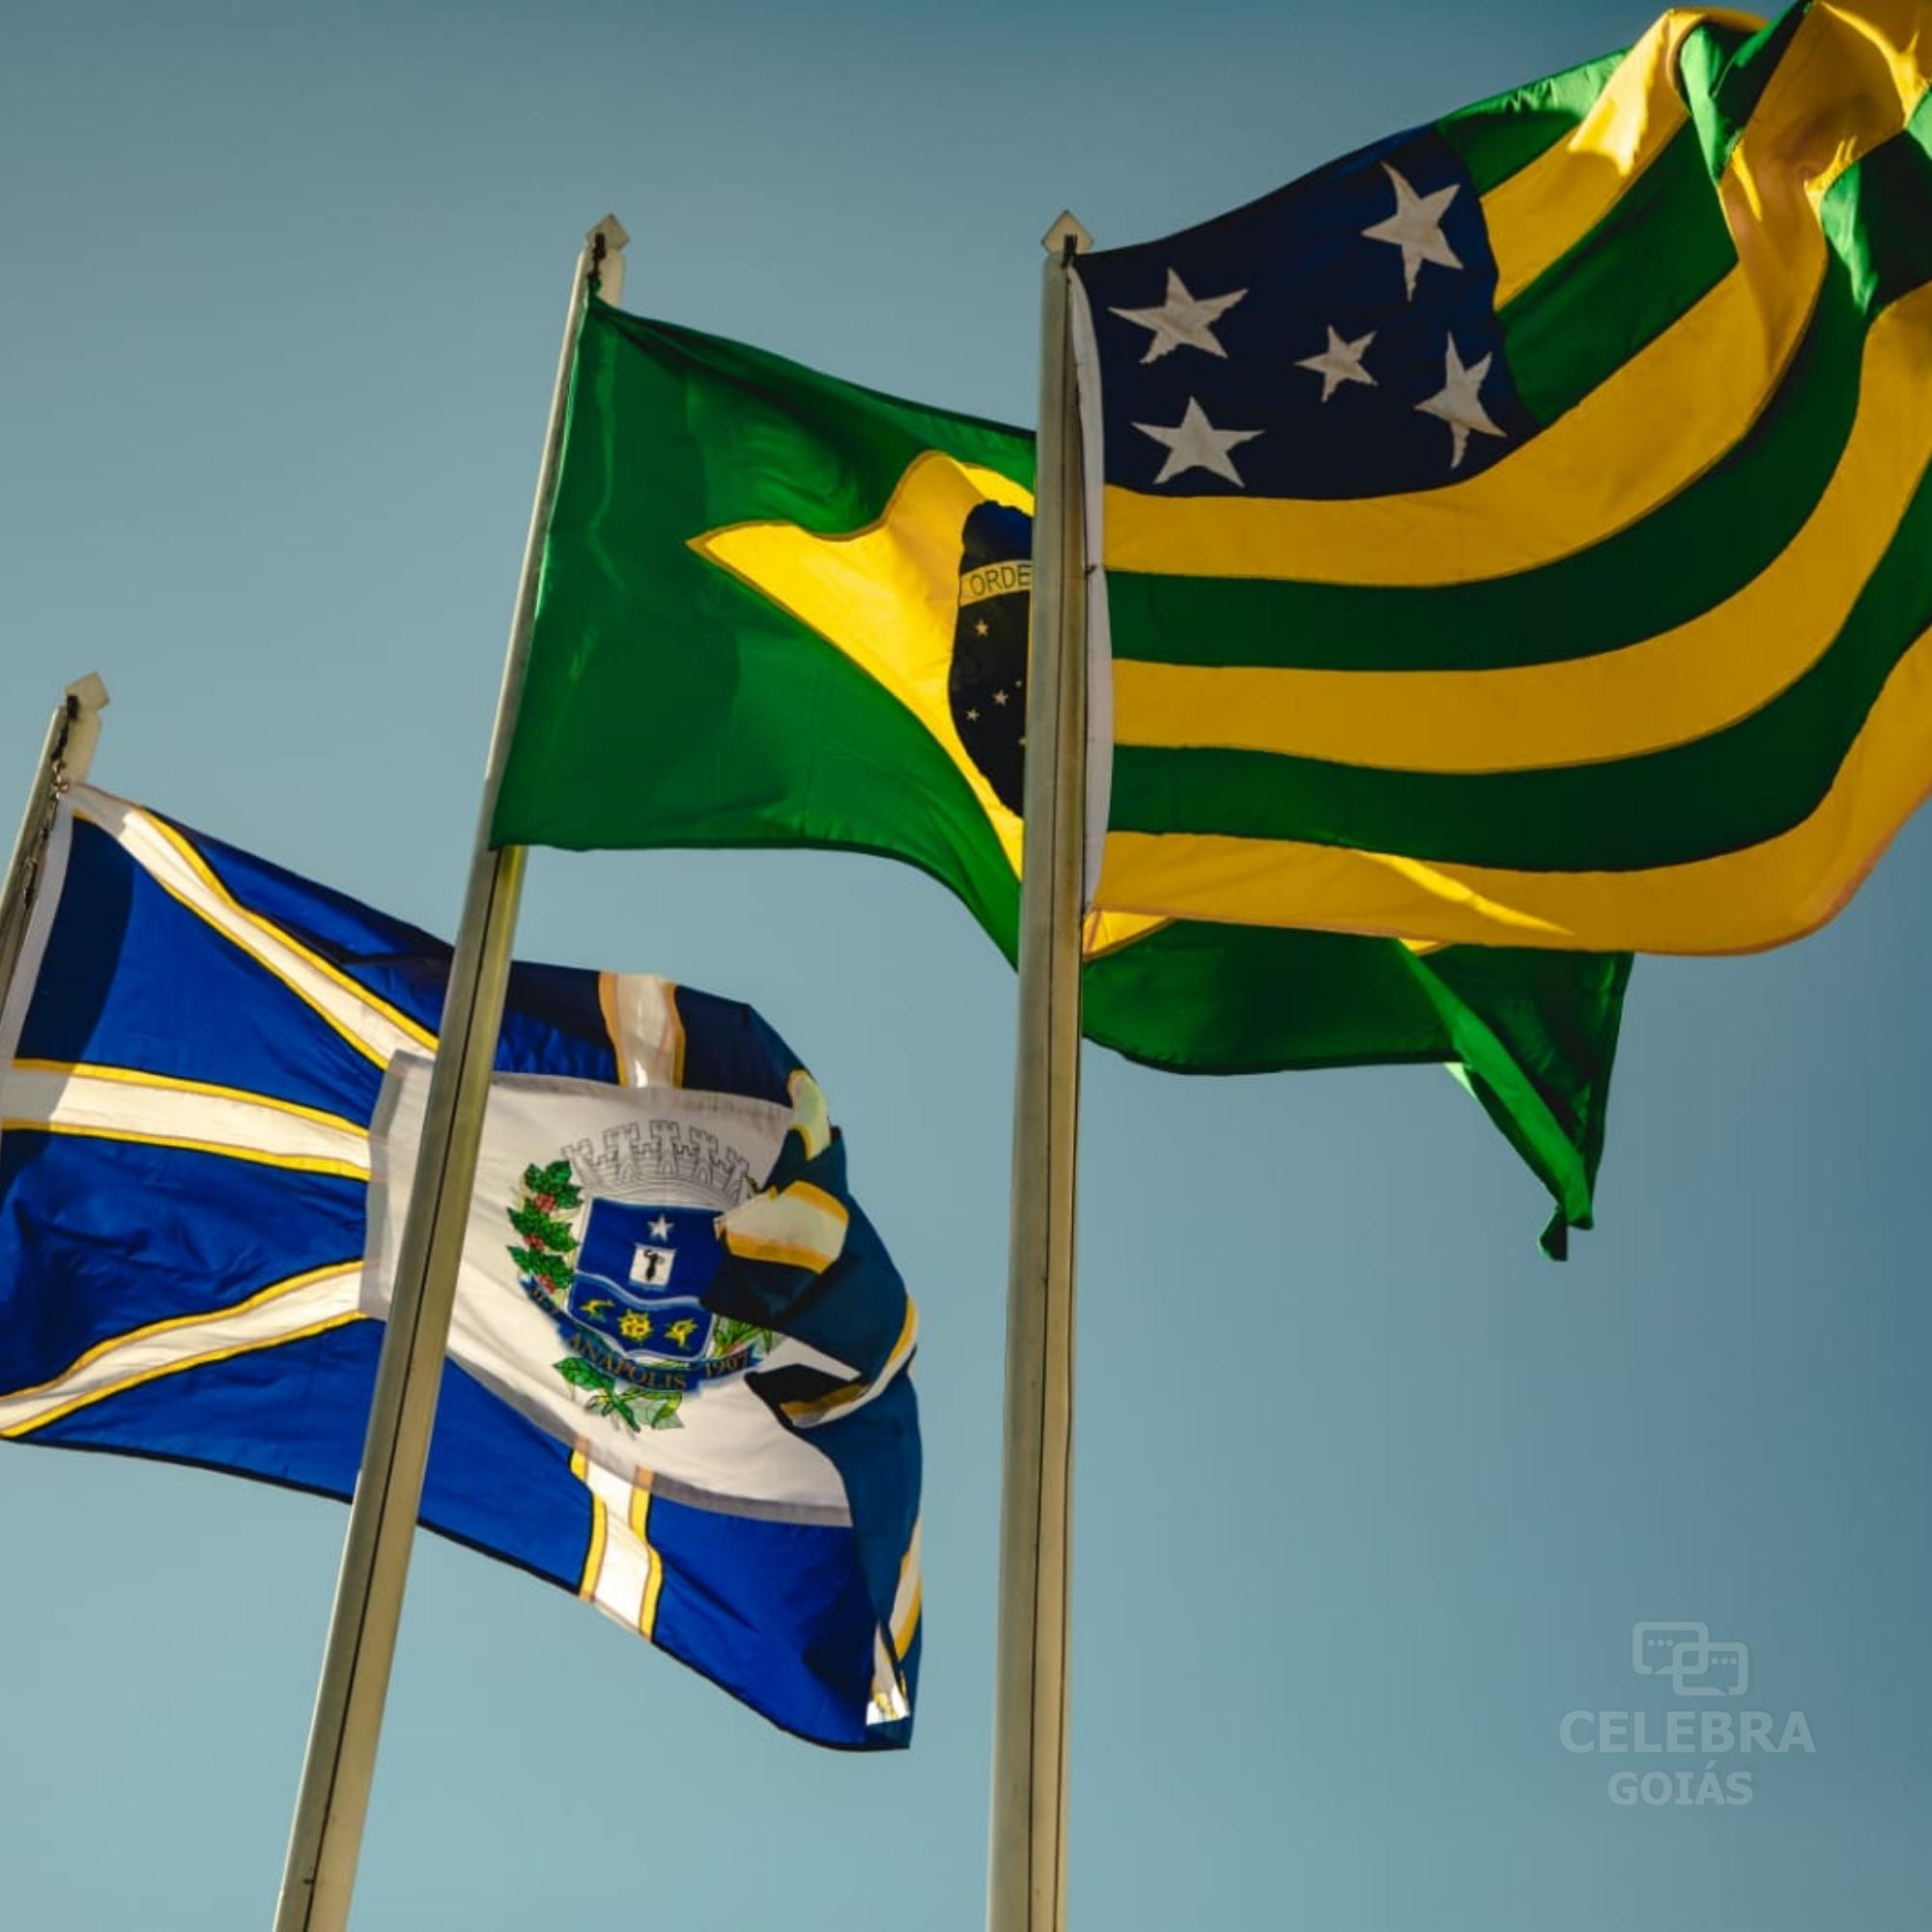  Viva o Brasil! Relembre o 7 de setembro em Goiás